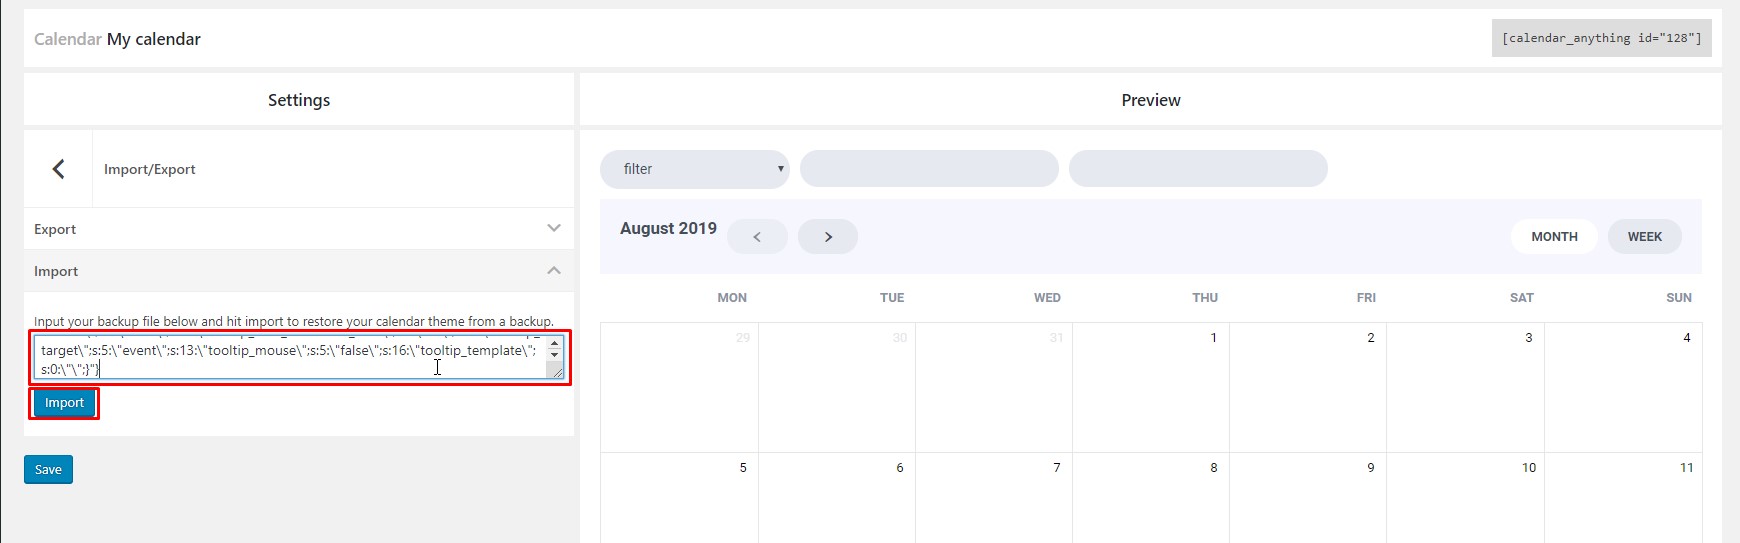 Calendar Anything WordPress Plugin